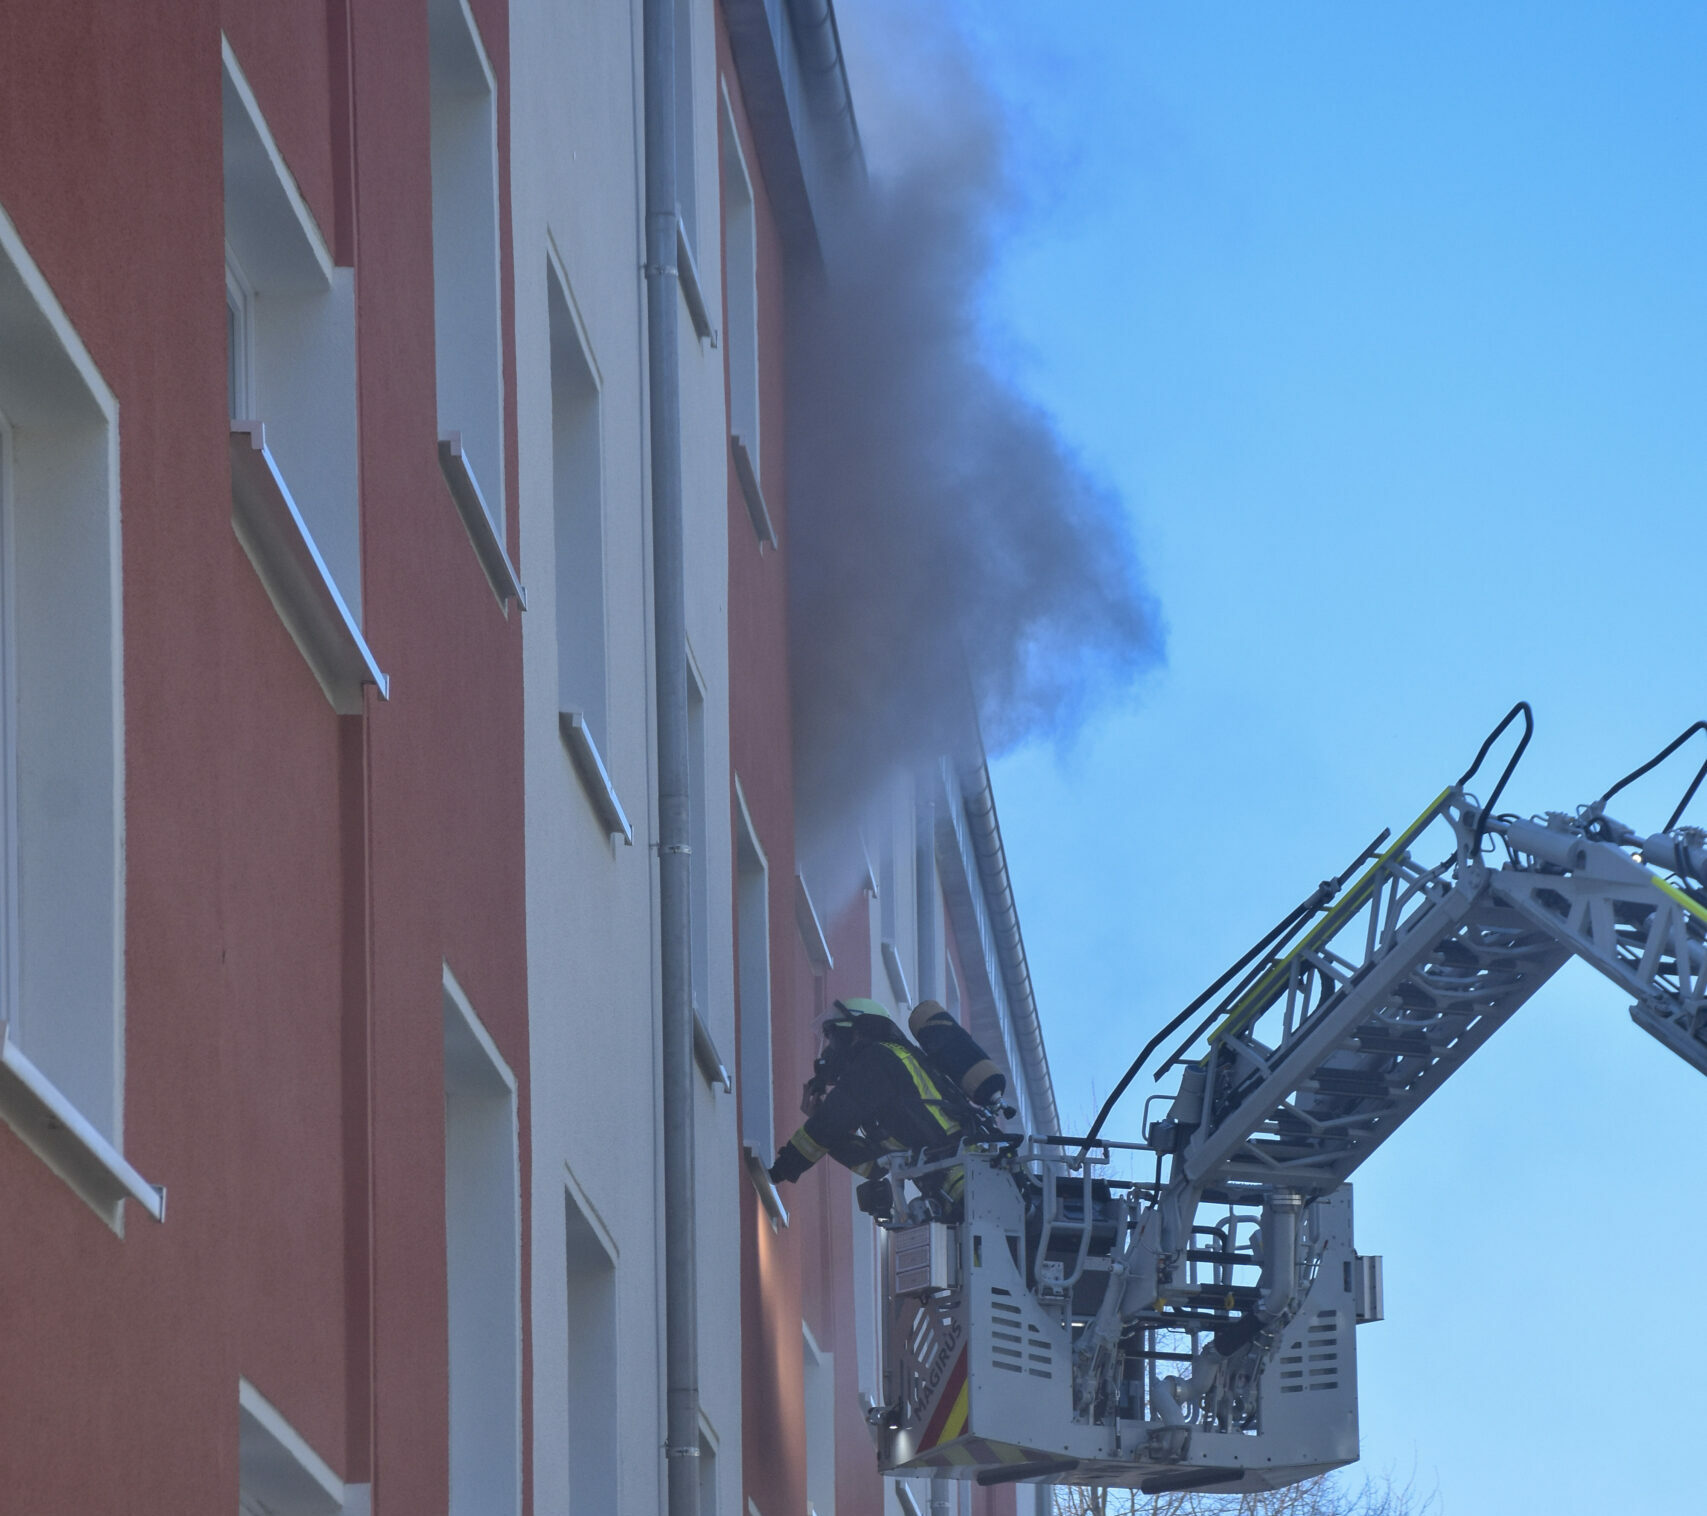 Kellerbrand in Neuasseln – Mehrere Bewohner per Drehleiter gerettet, darunter Kleinkind – 8 Verletzte